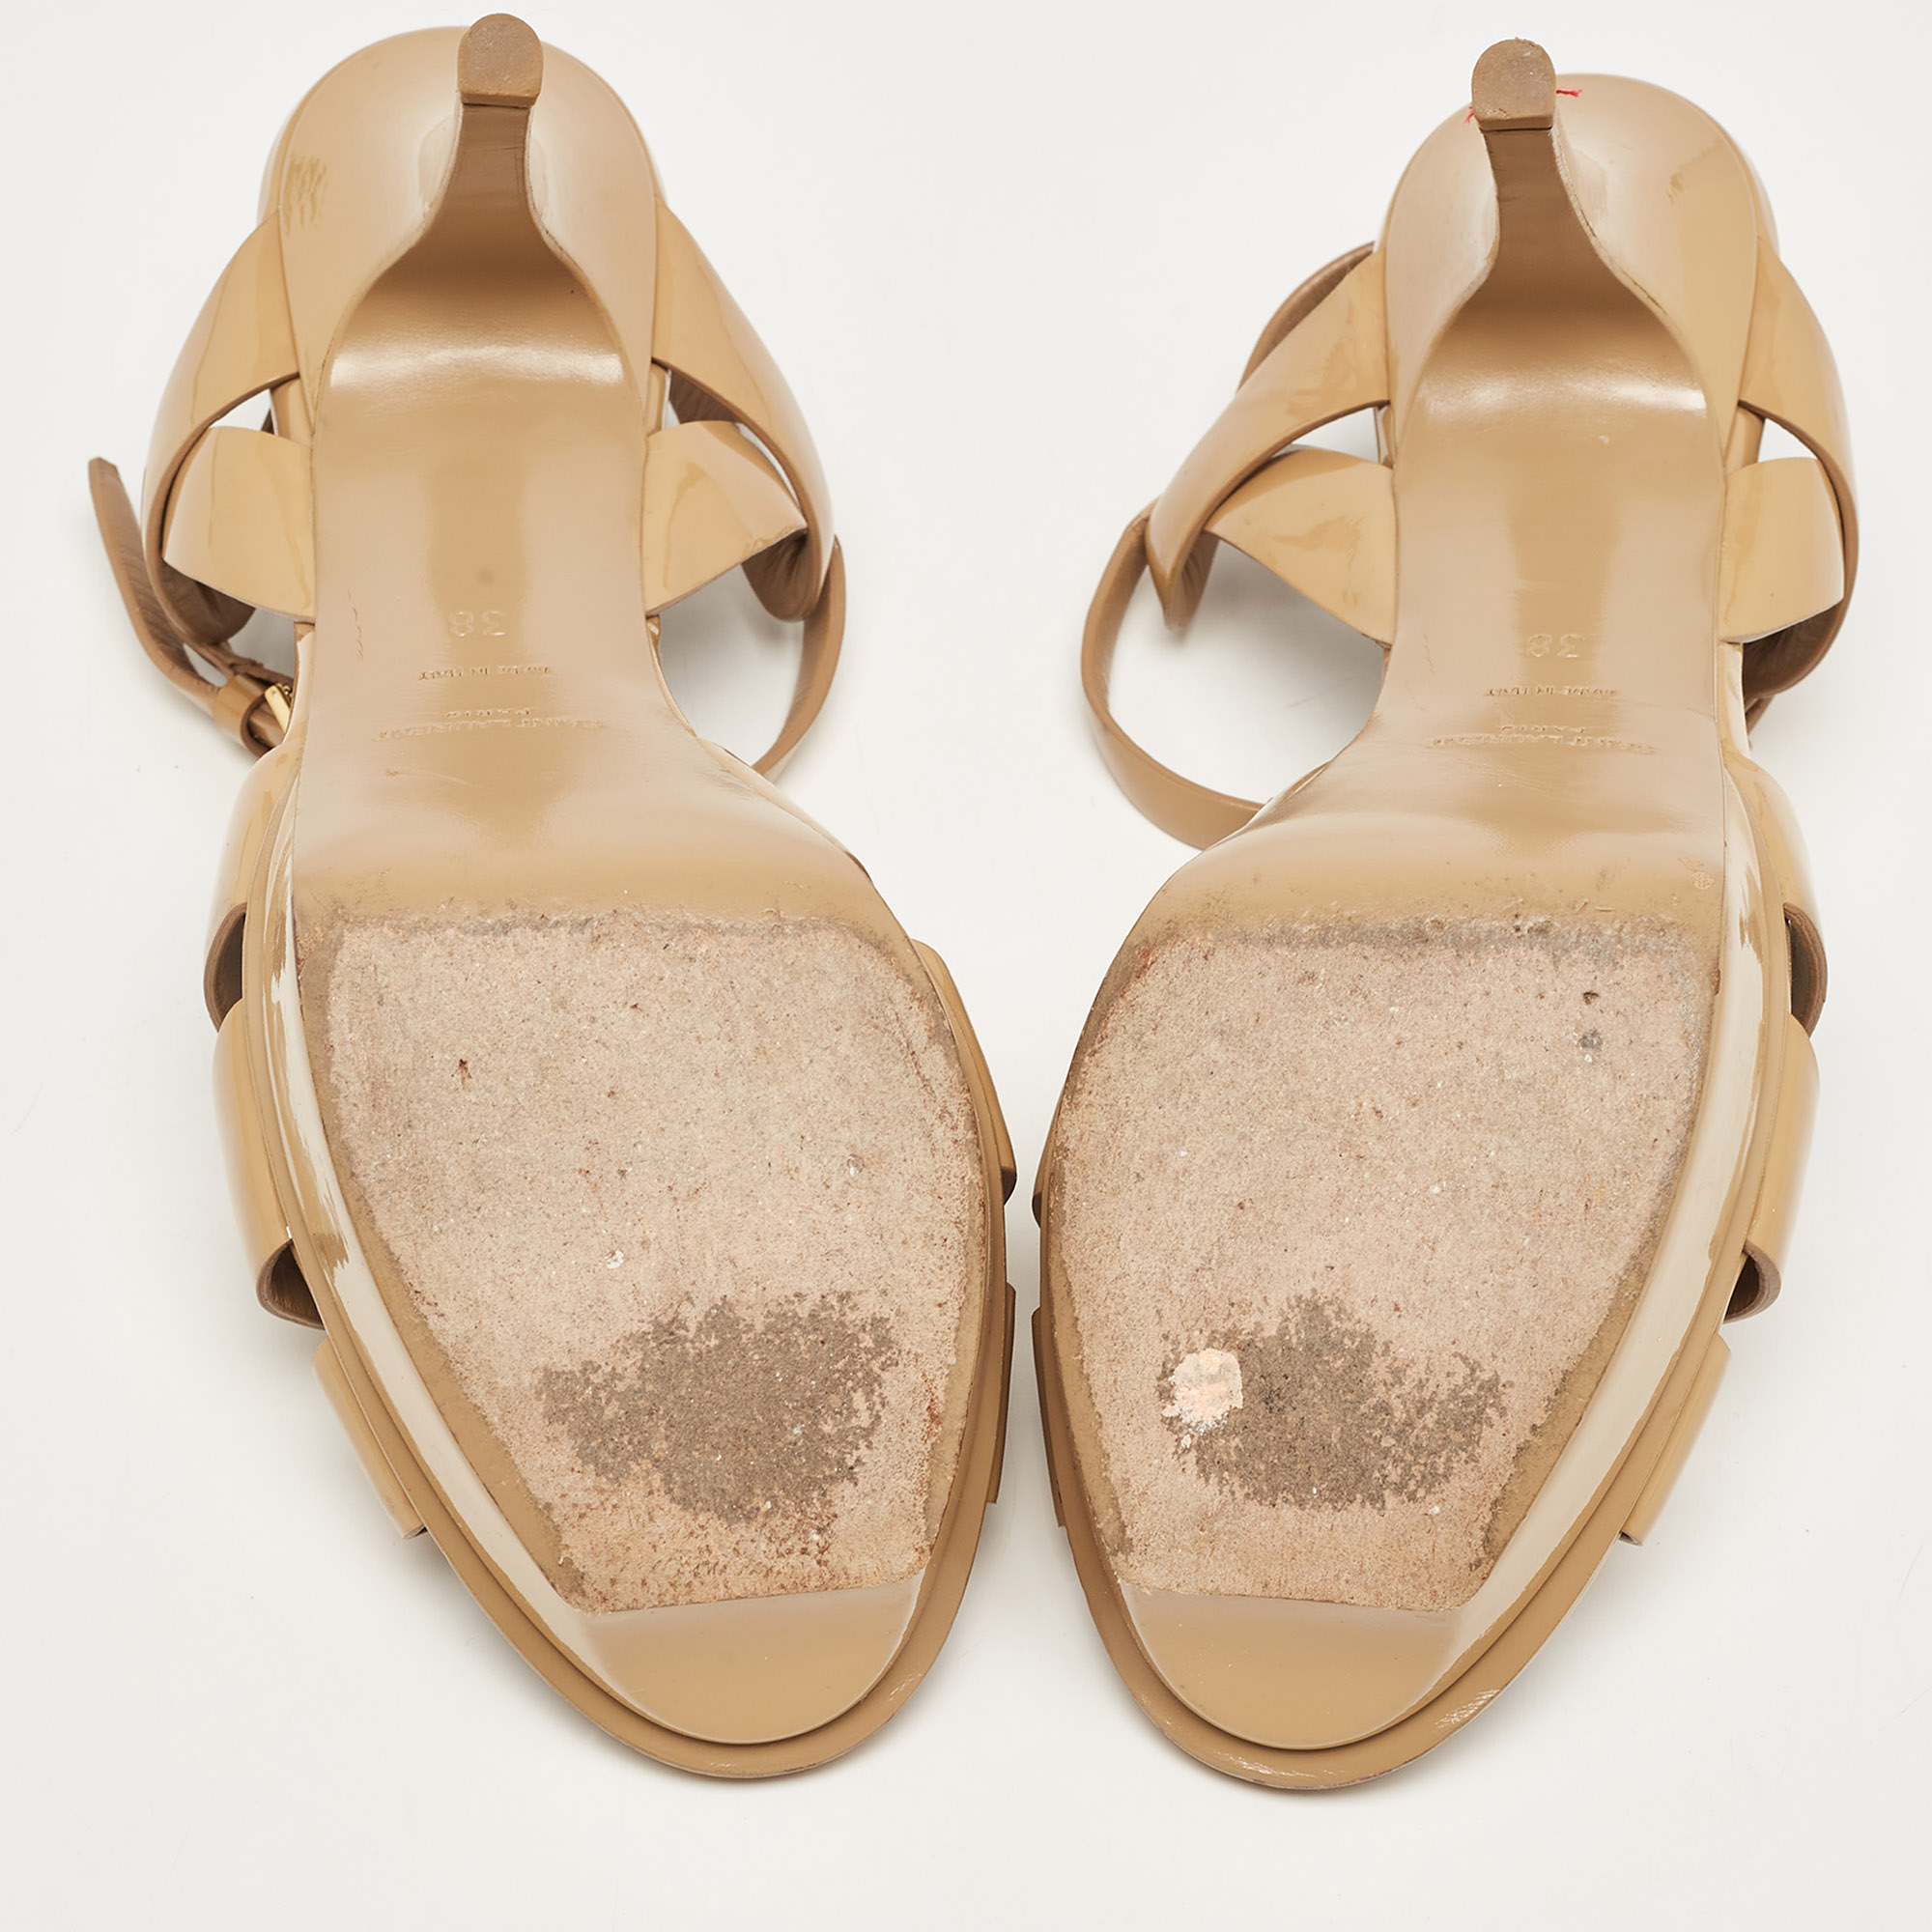 Saint Laurent Brown Patent Leather Tribute Sandals Size 38